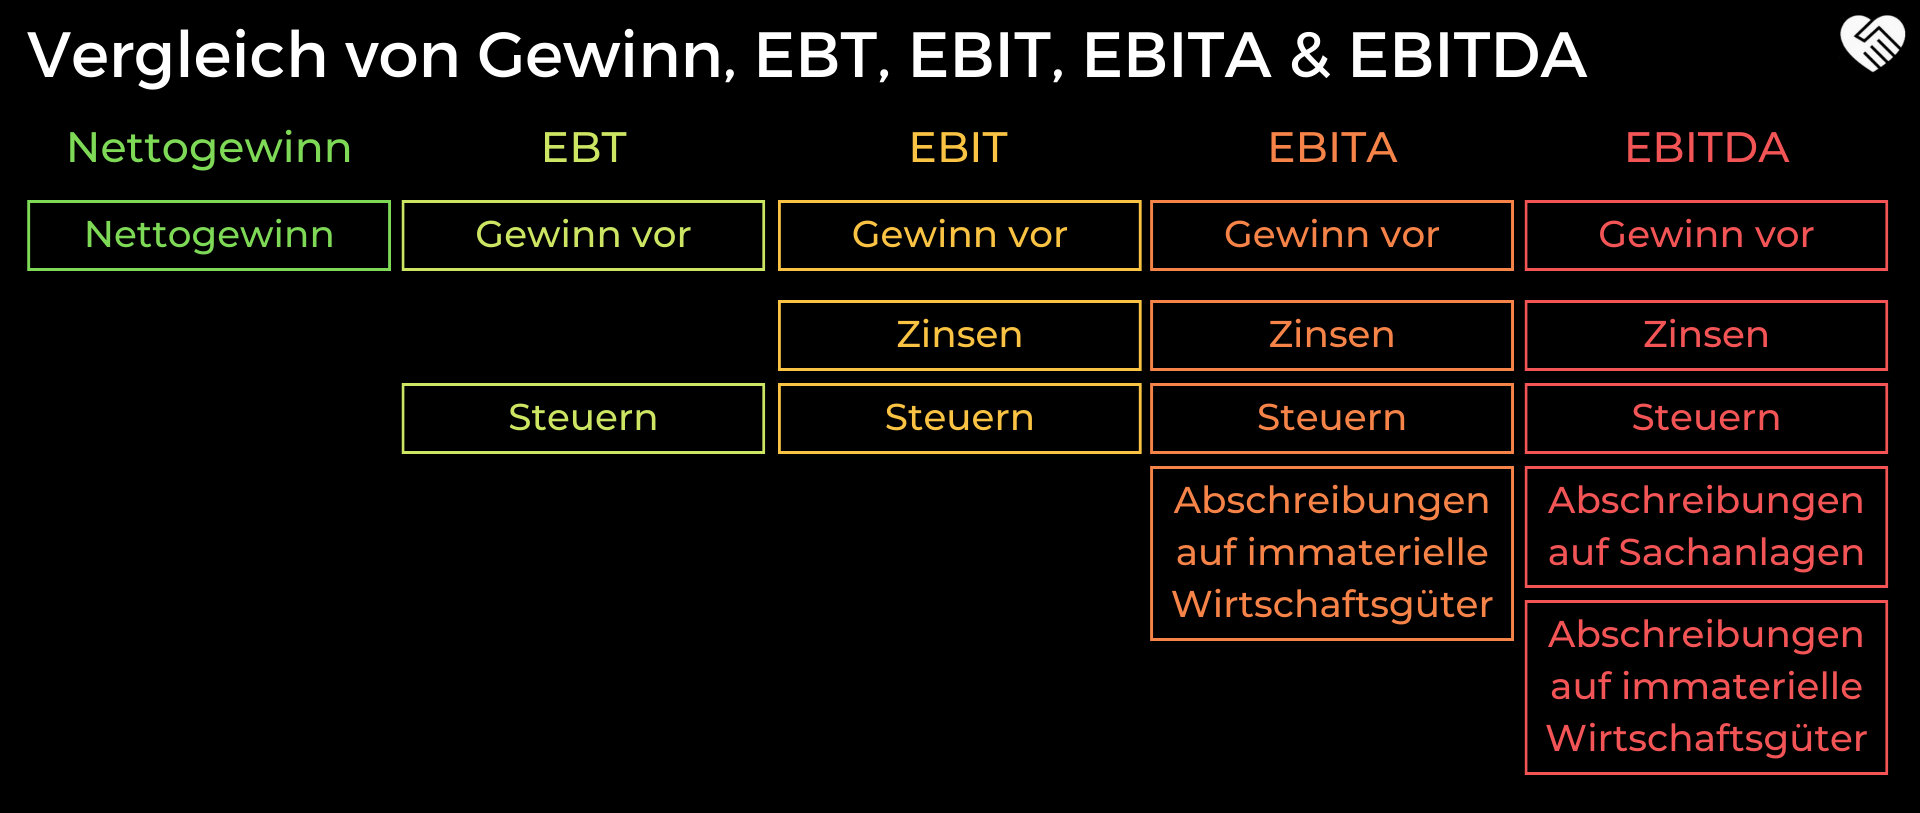 EBT (Gewinn vor Steuern) im Vergleich zu EBIT, EBITA und EBITDA